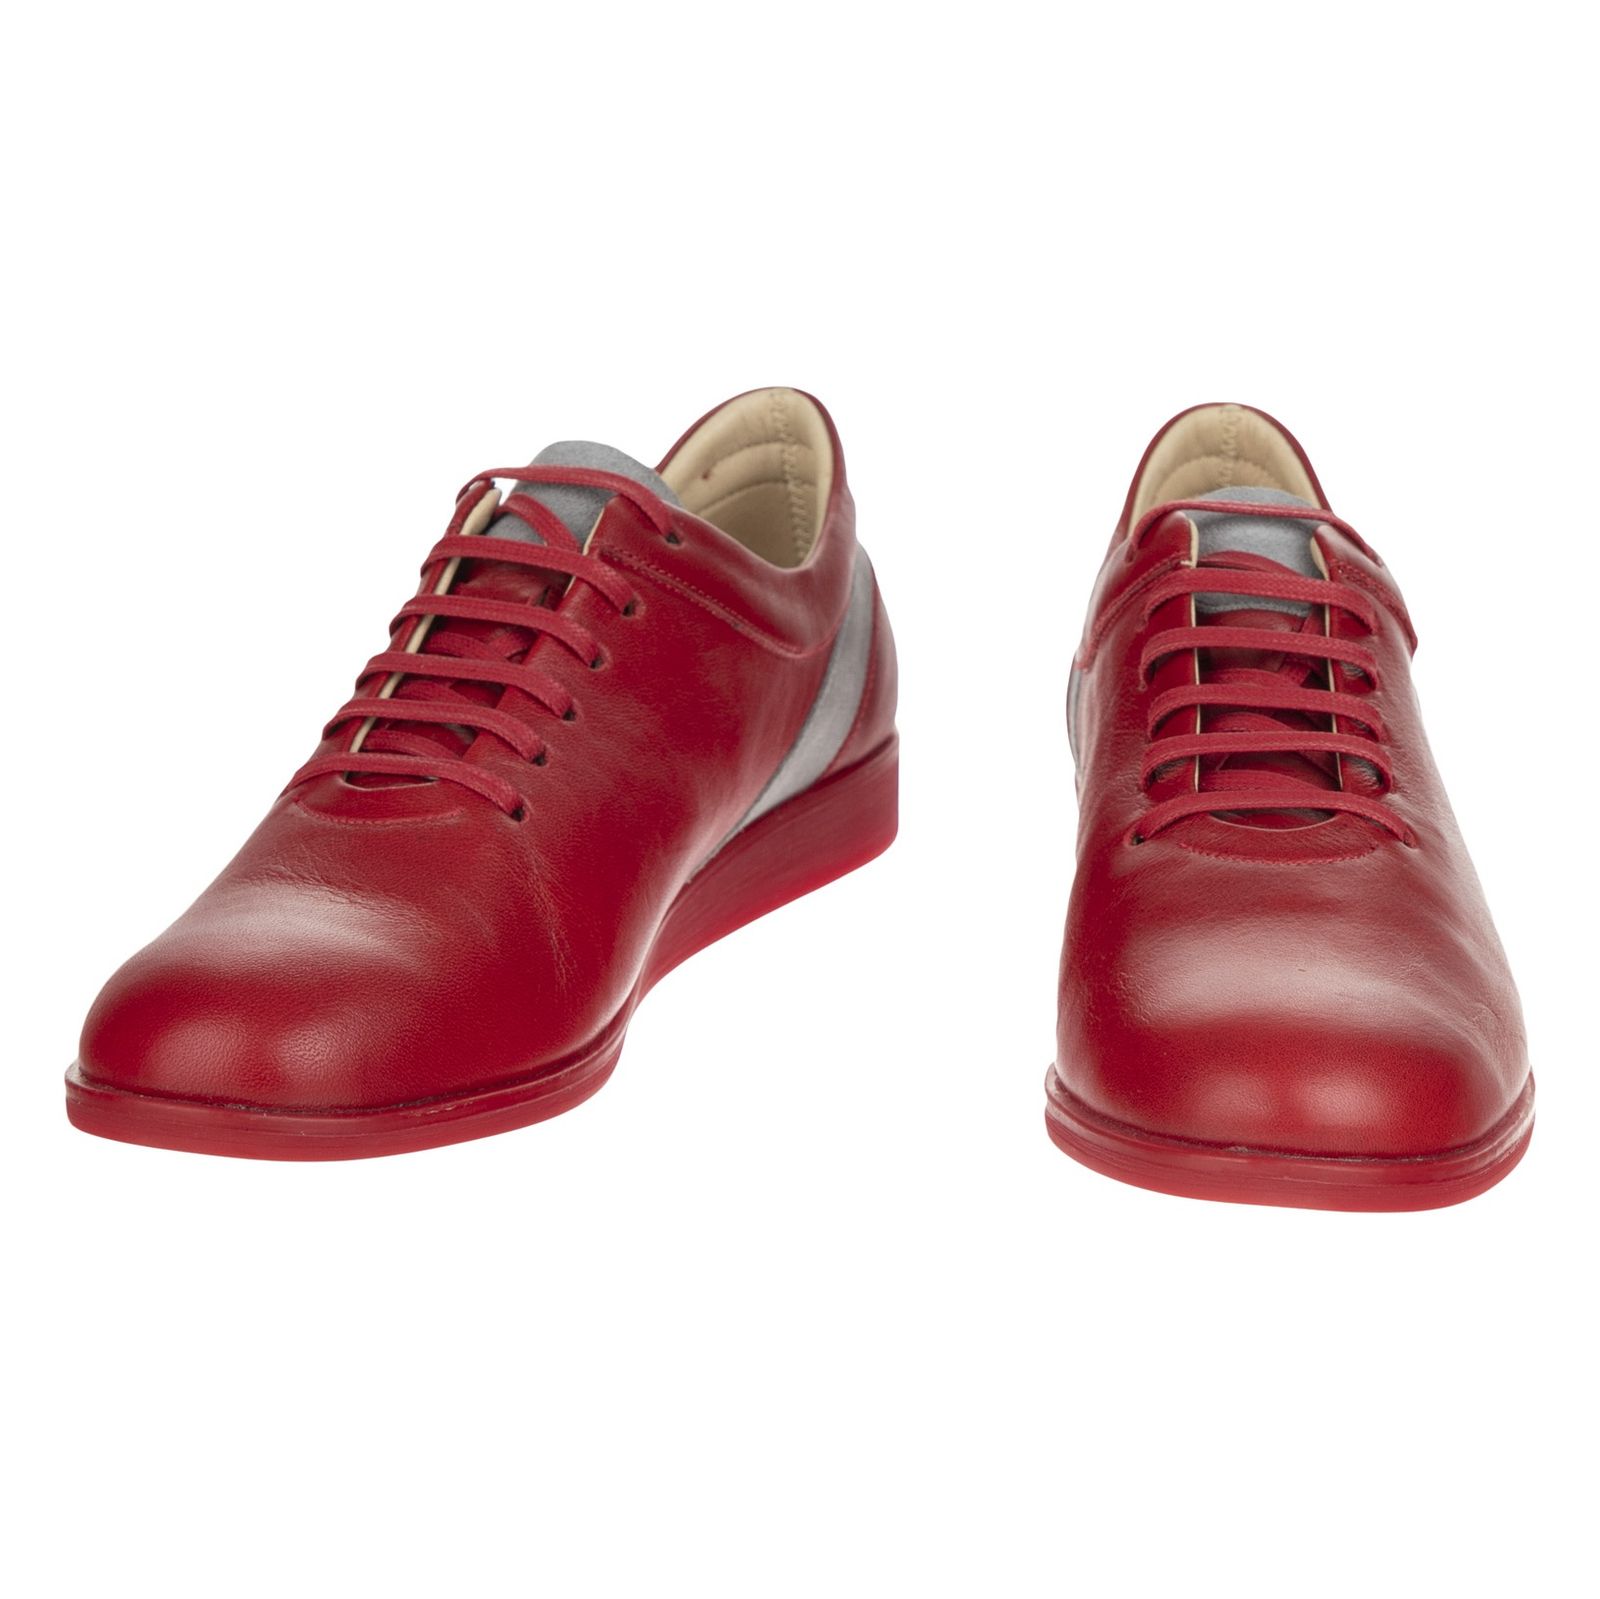 کفش روزمره زنانه برتونیکس مدل 960-24 - قرمز - 4